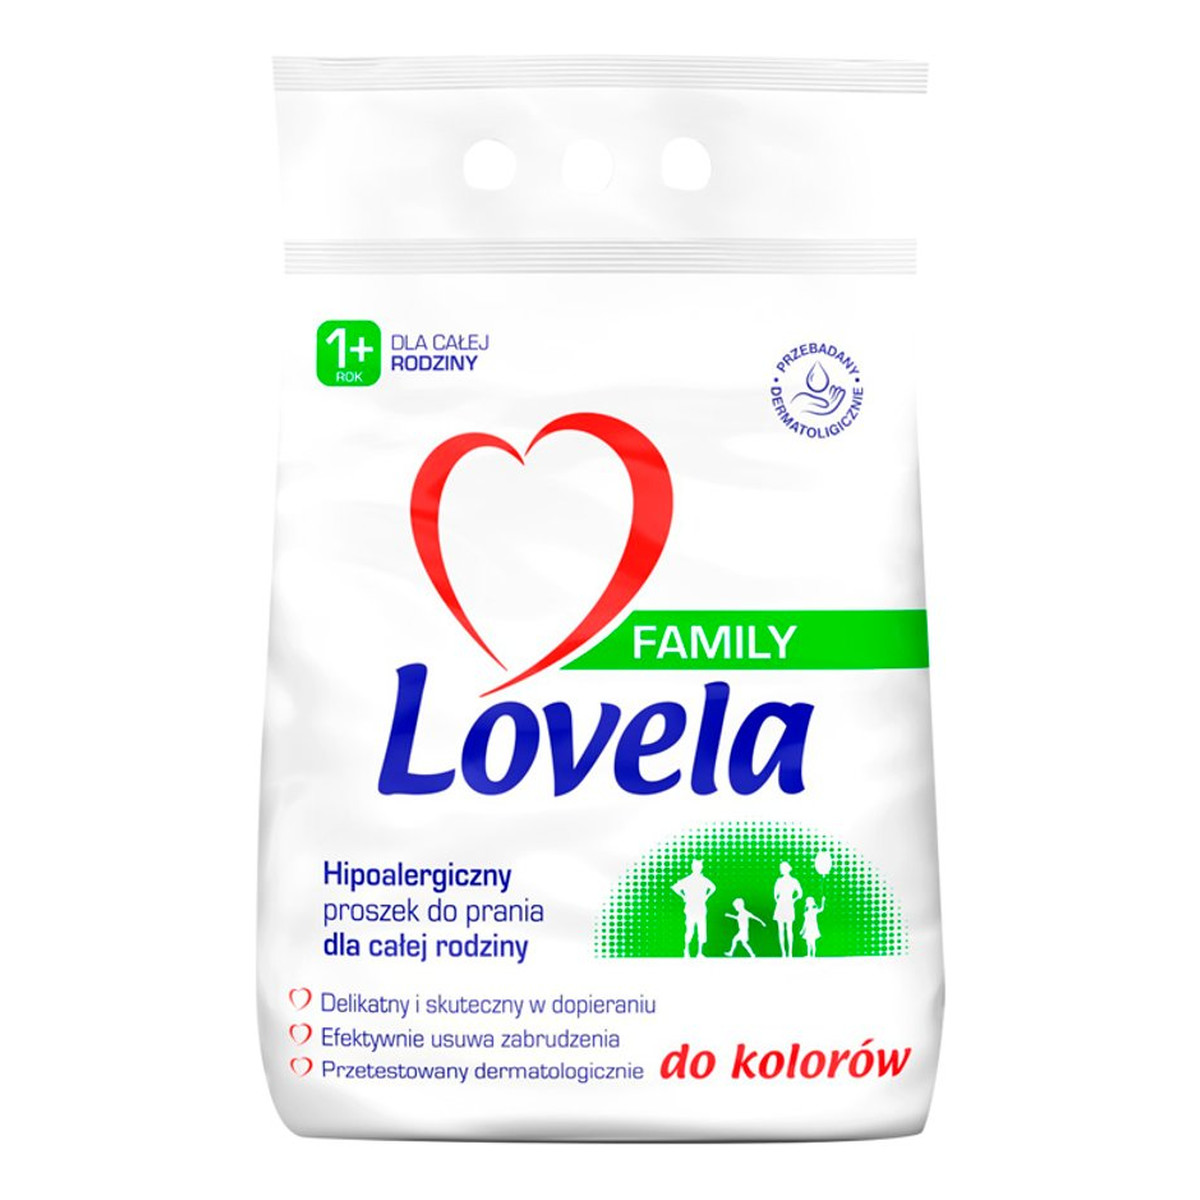 Lovela Family hipoalergiczny proszek do prania kolorów 2.1kg 2100g